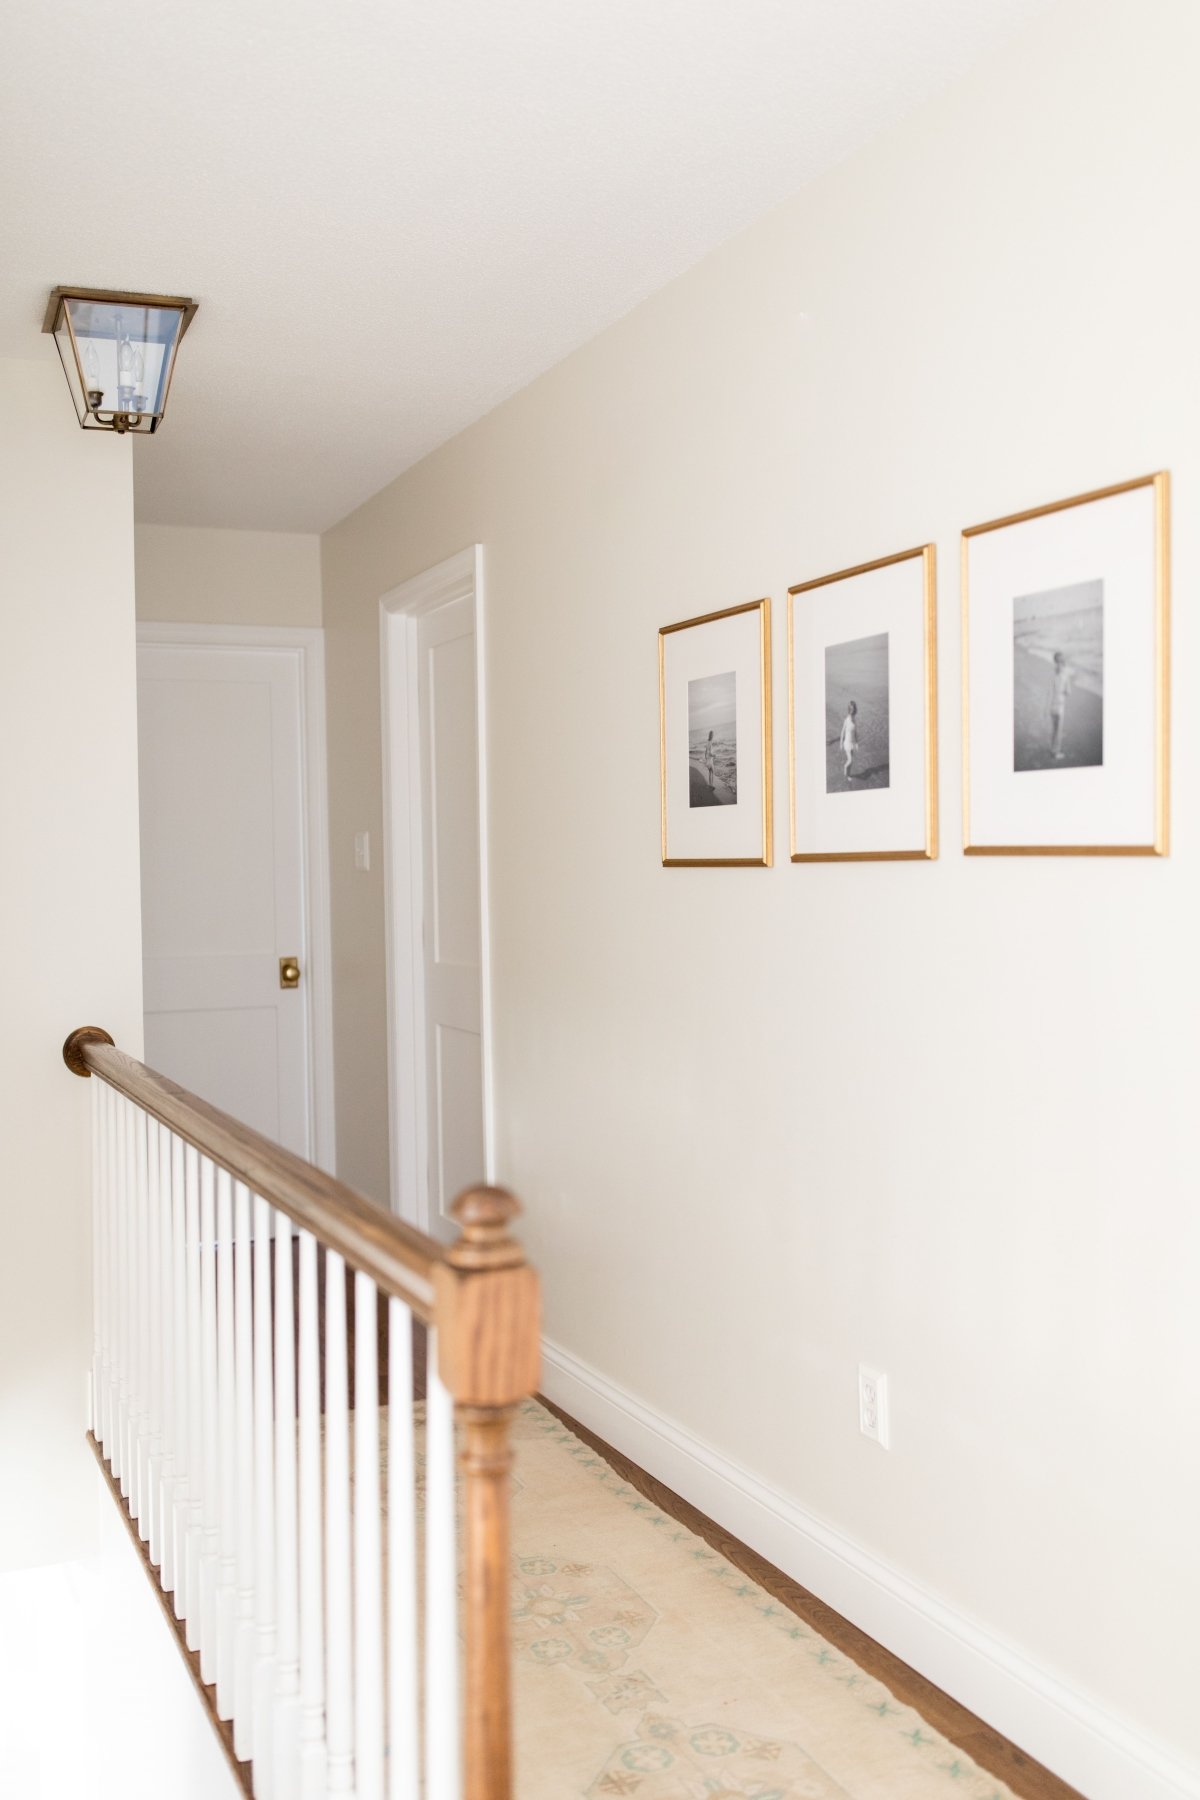 走廊涂奶油油漆颜色,黄铜框架黑白照片在墙上